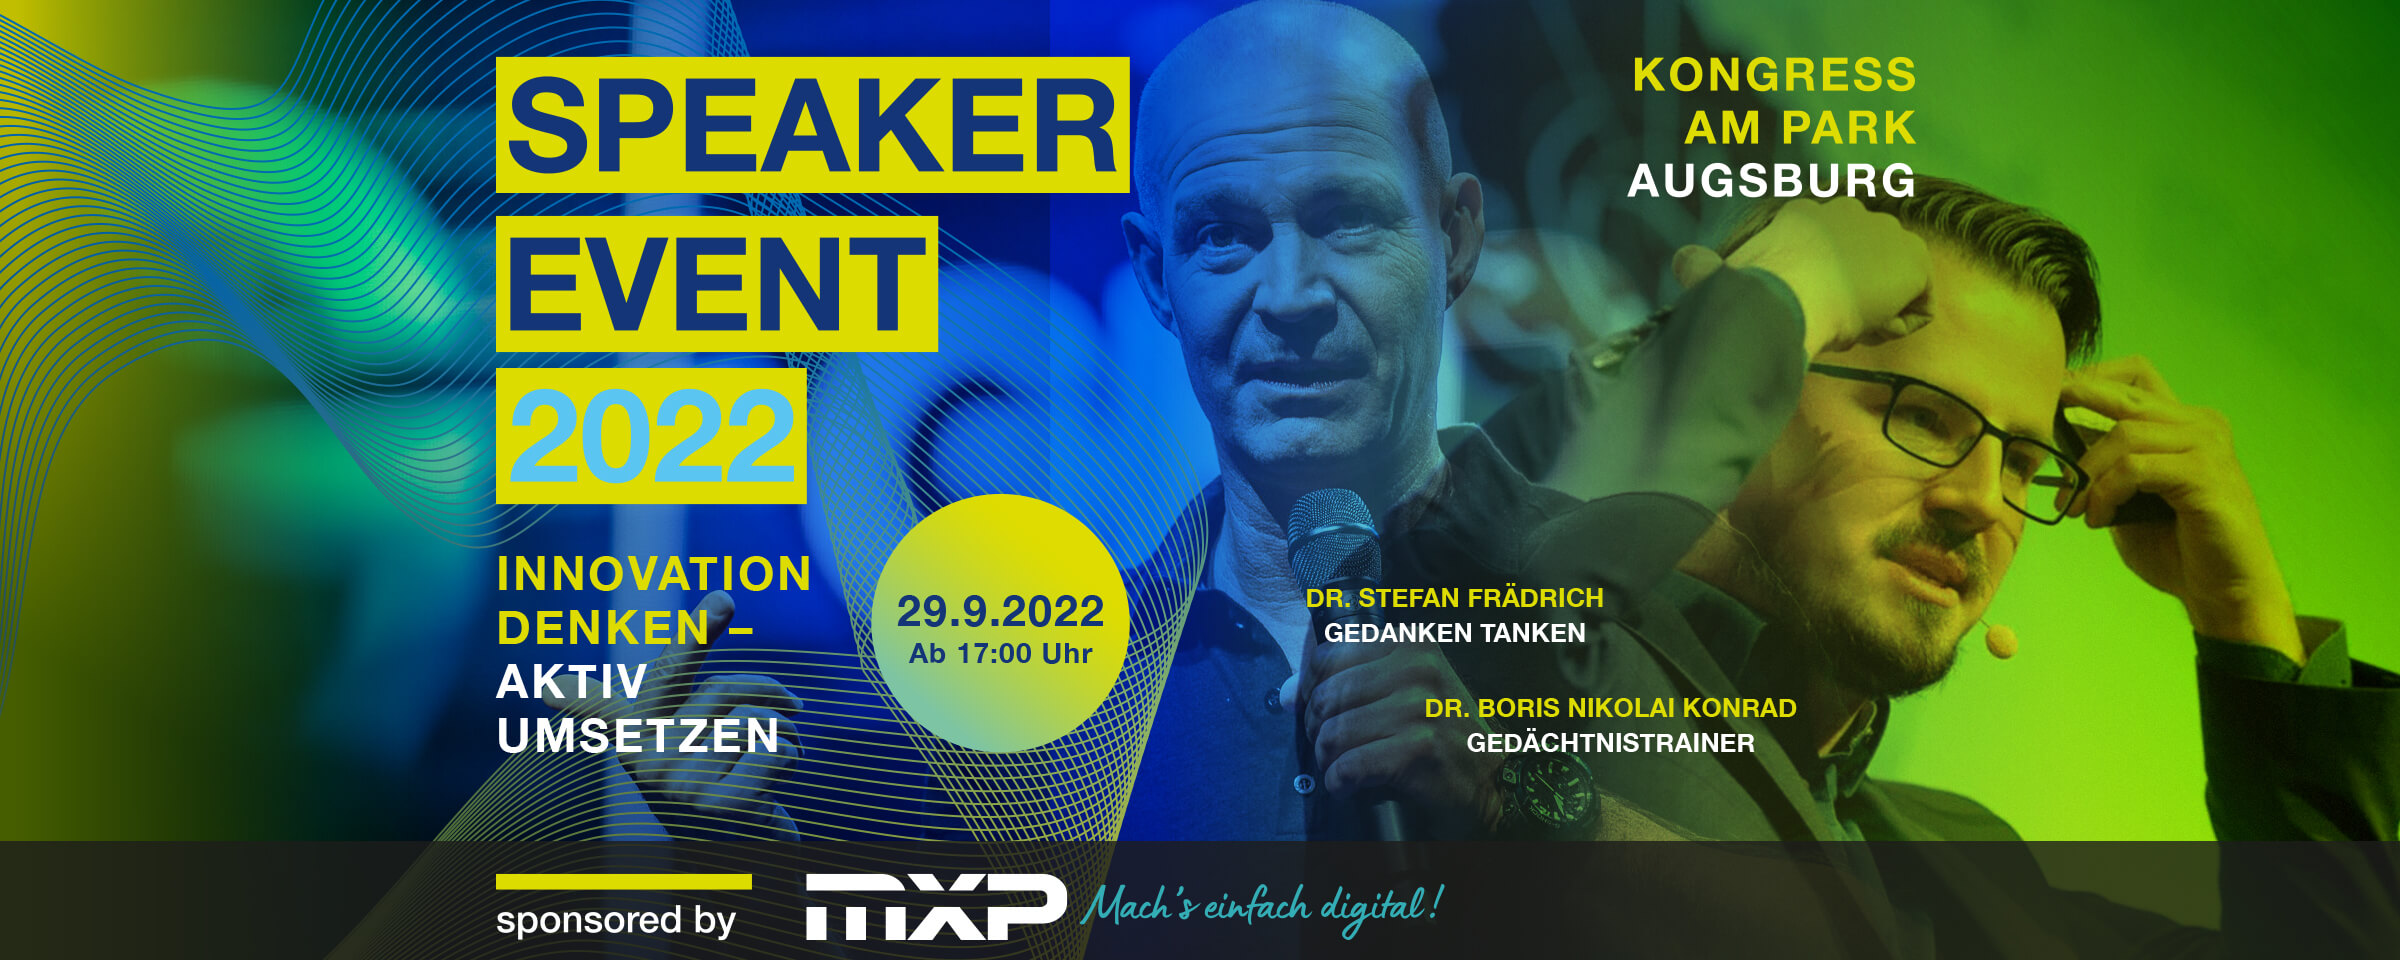 Speaker Event 2022, sponsored by MXP